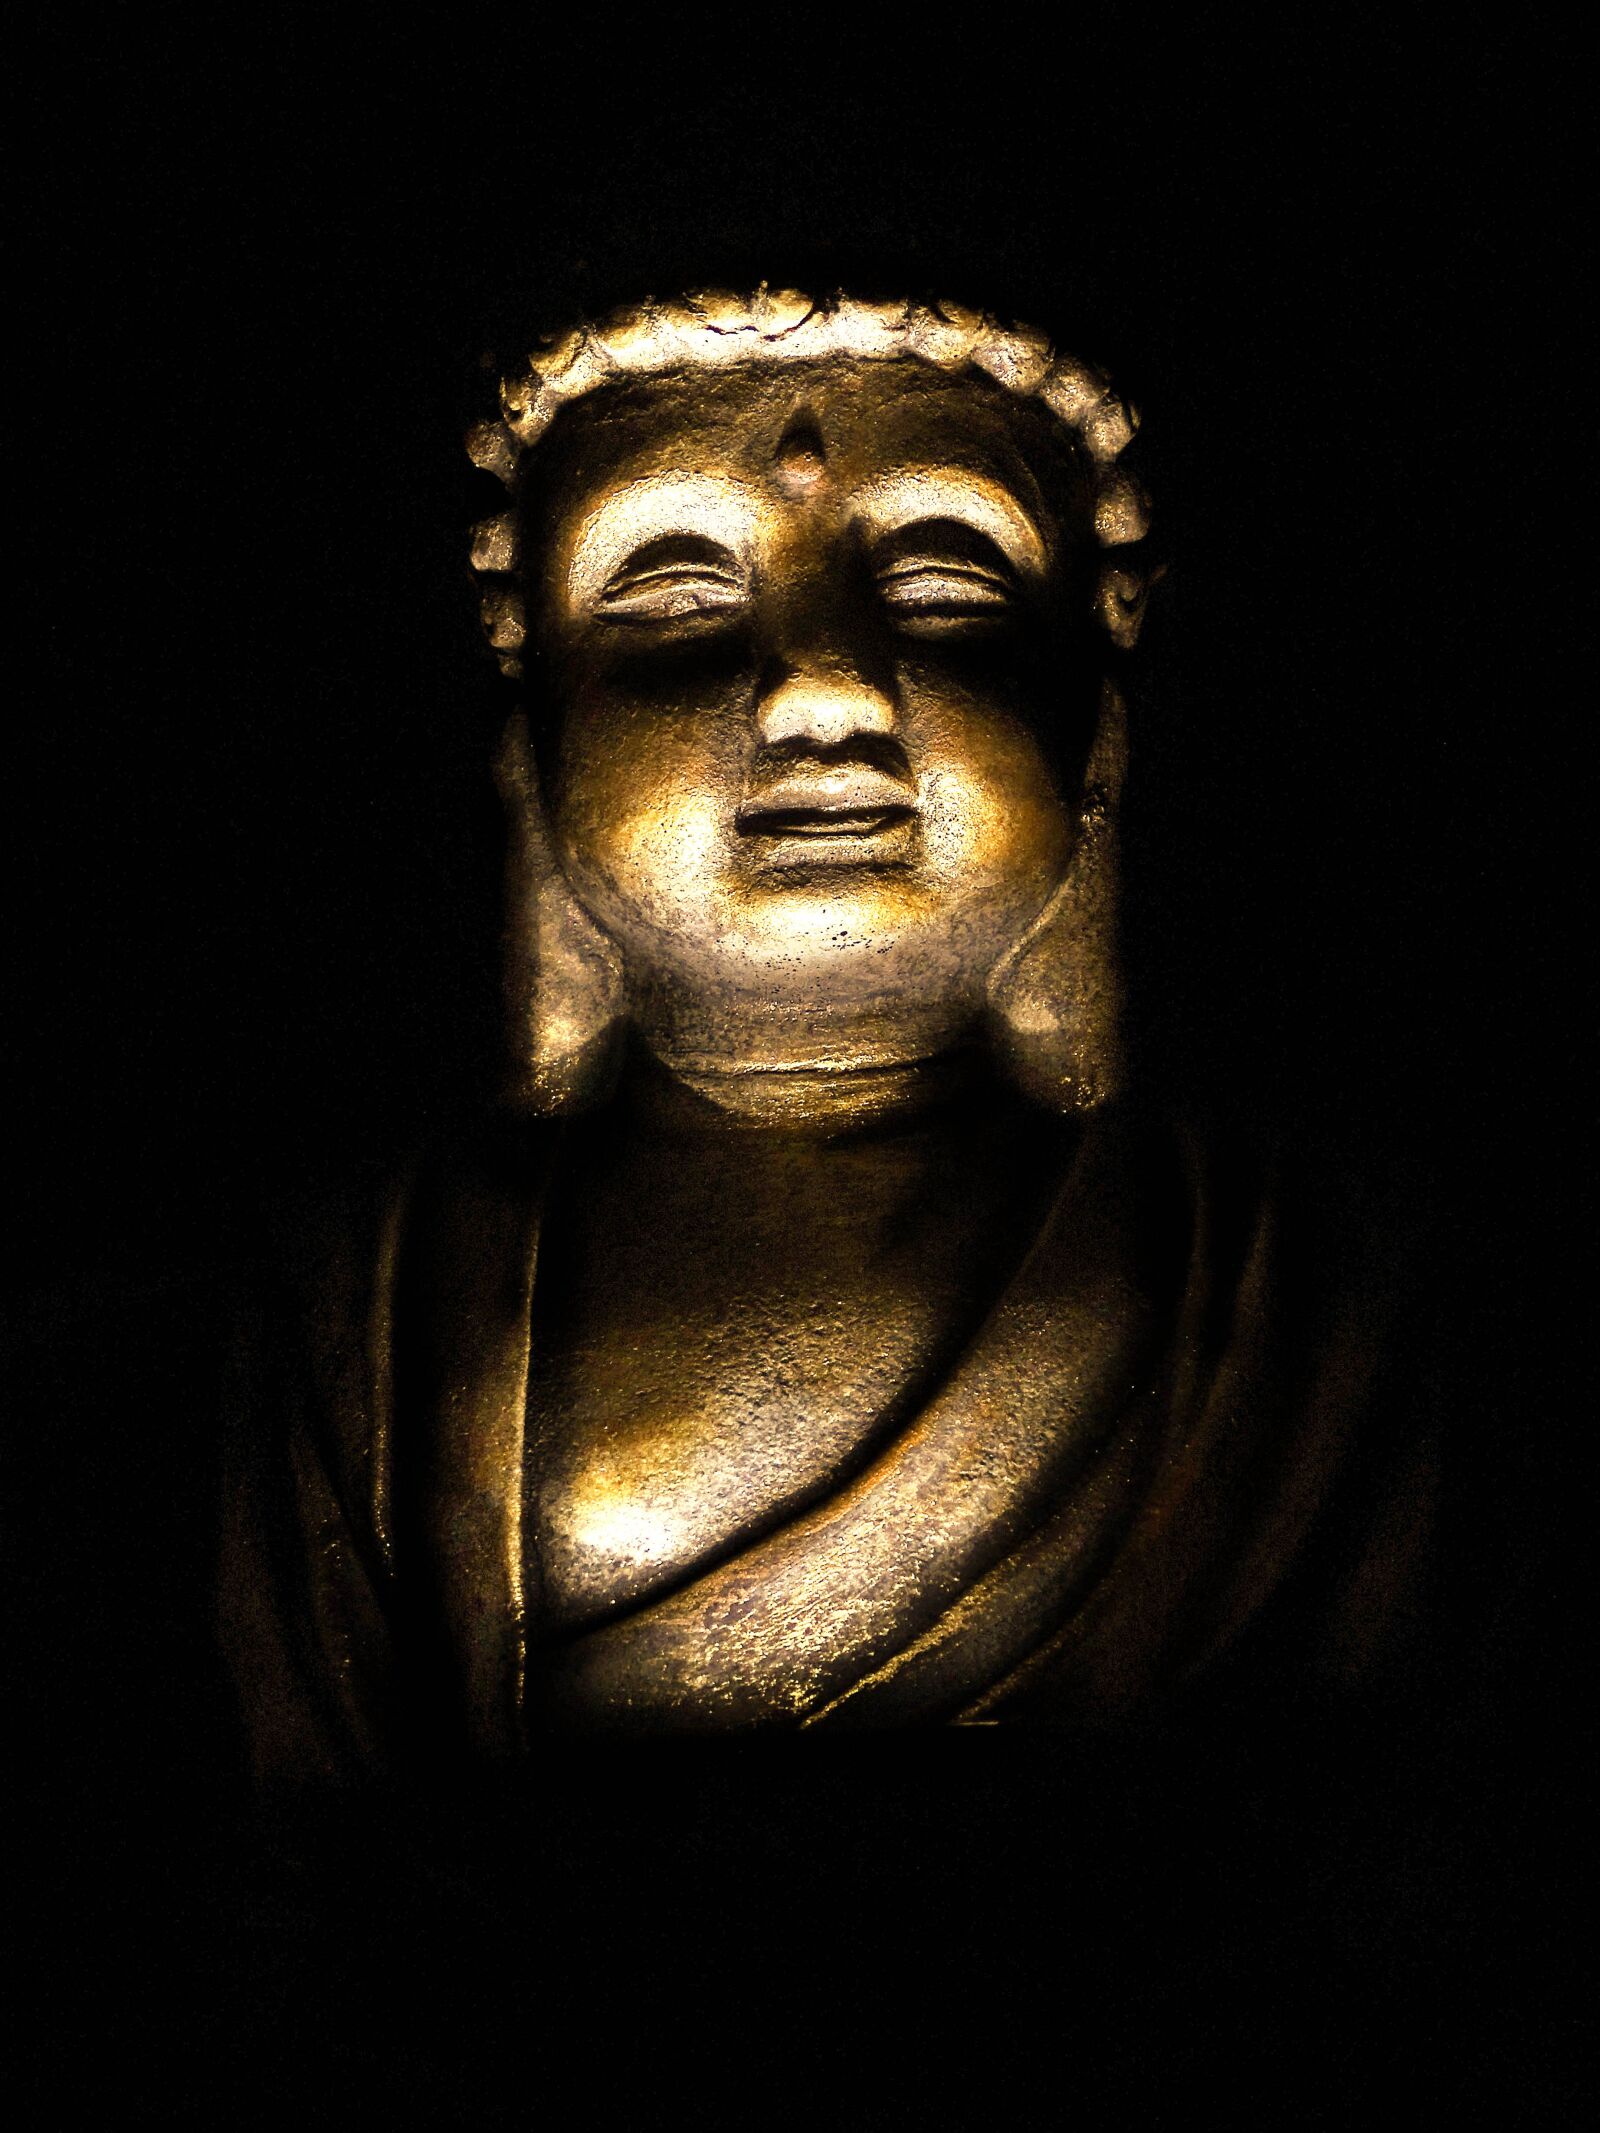 Sony Cyber-shot DSC-HX400V sample photo. Buddha, religion, buddhism photography